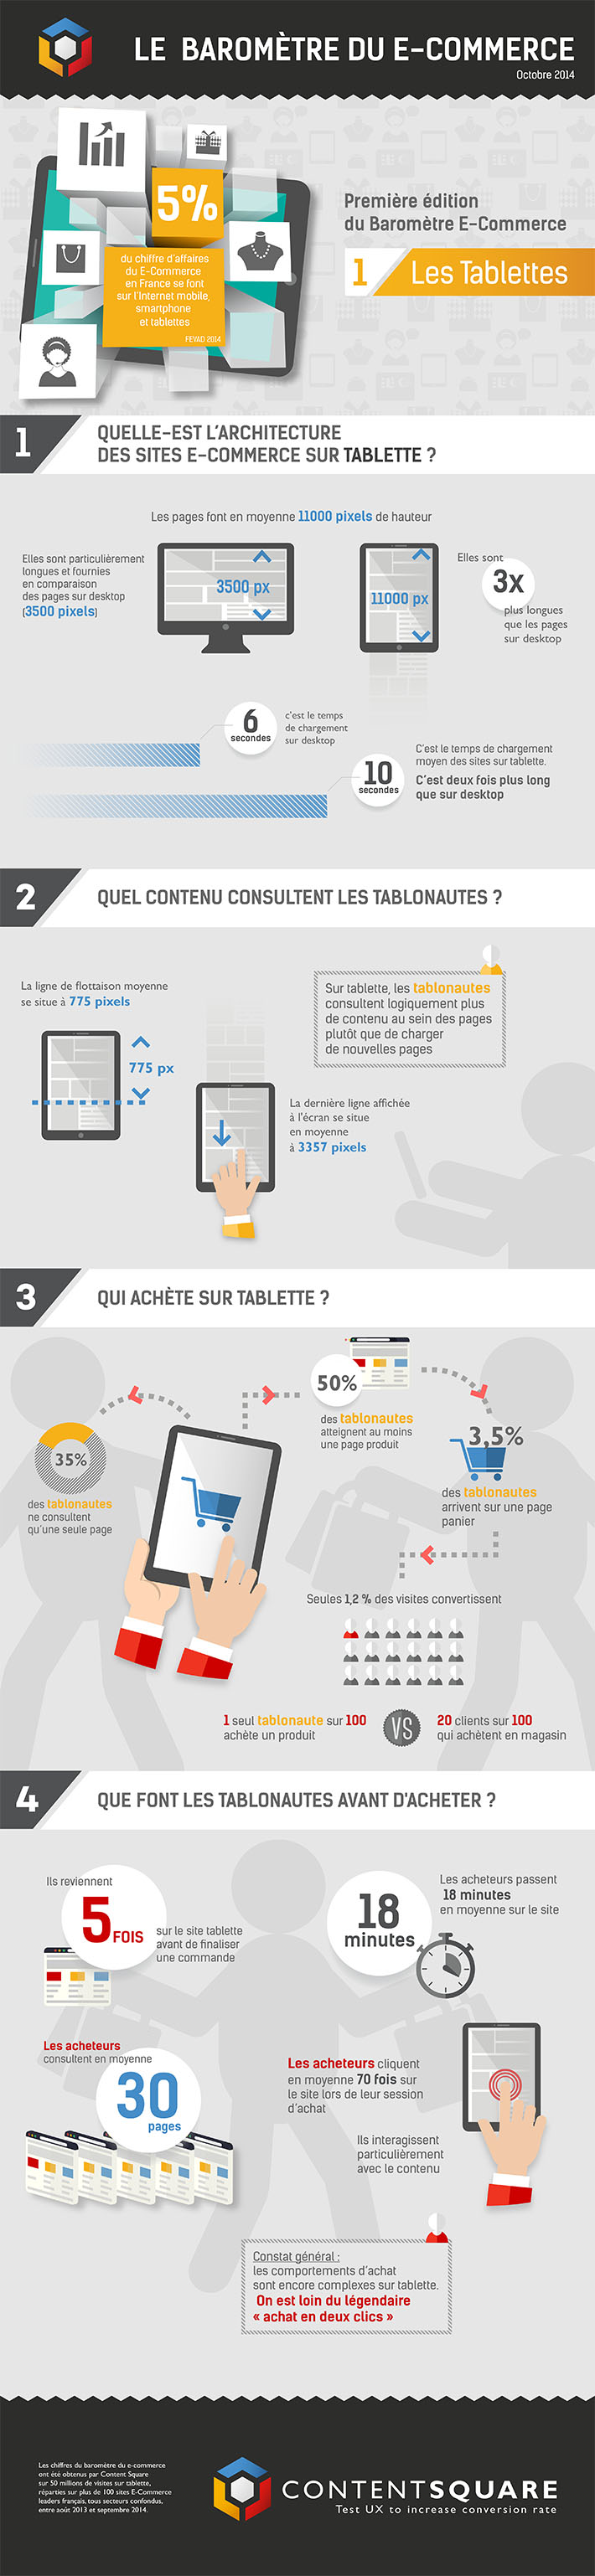 Infographie l'e-commerce sur tablettes en octobre 2014 en France